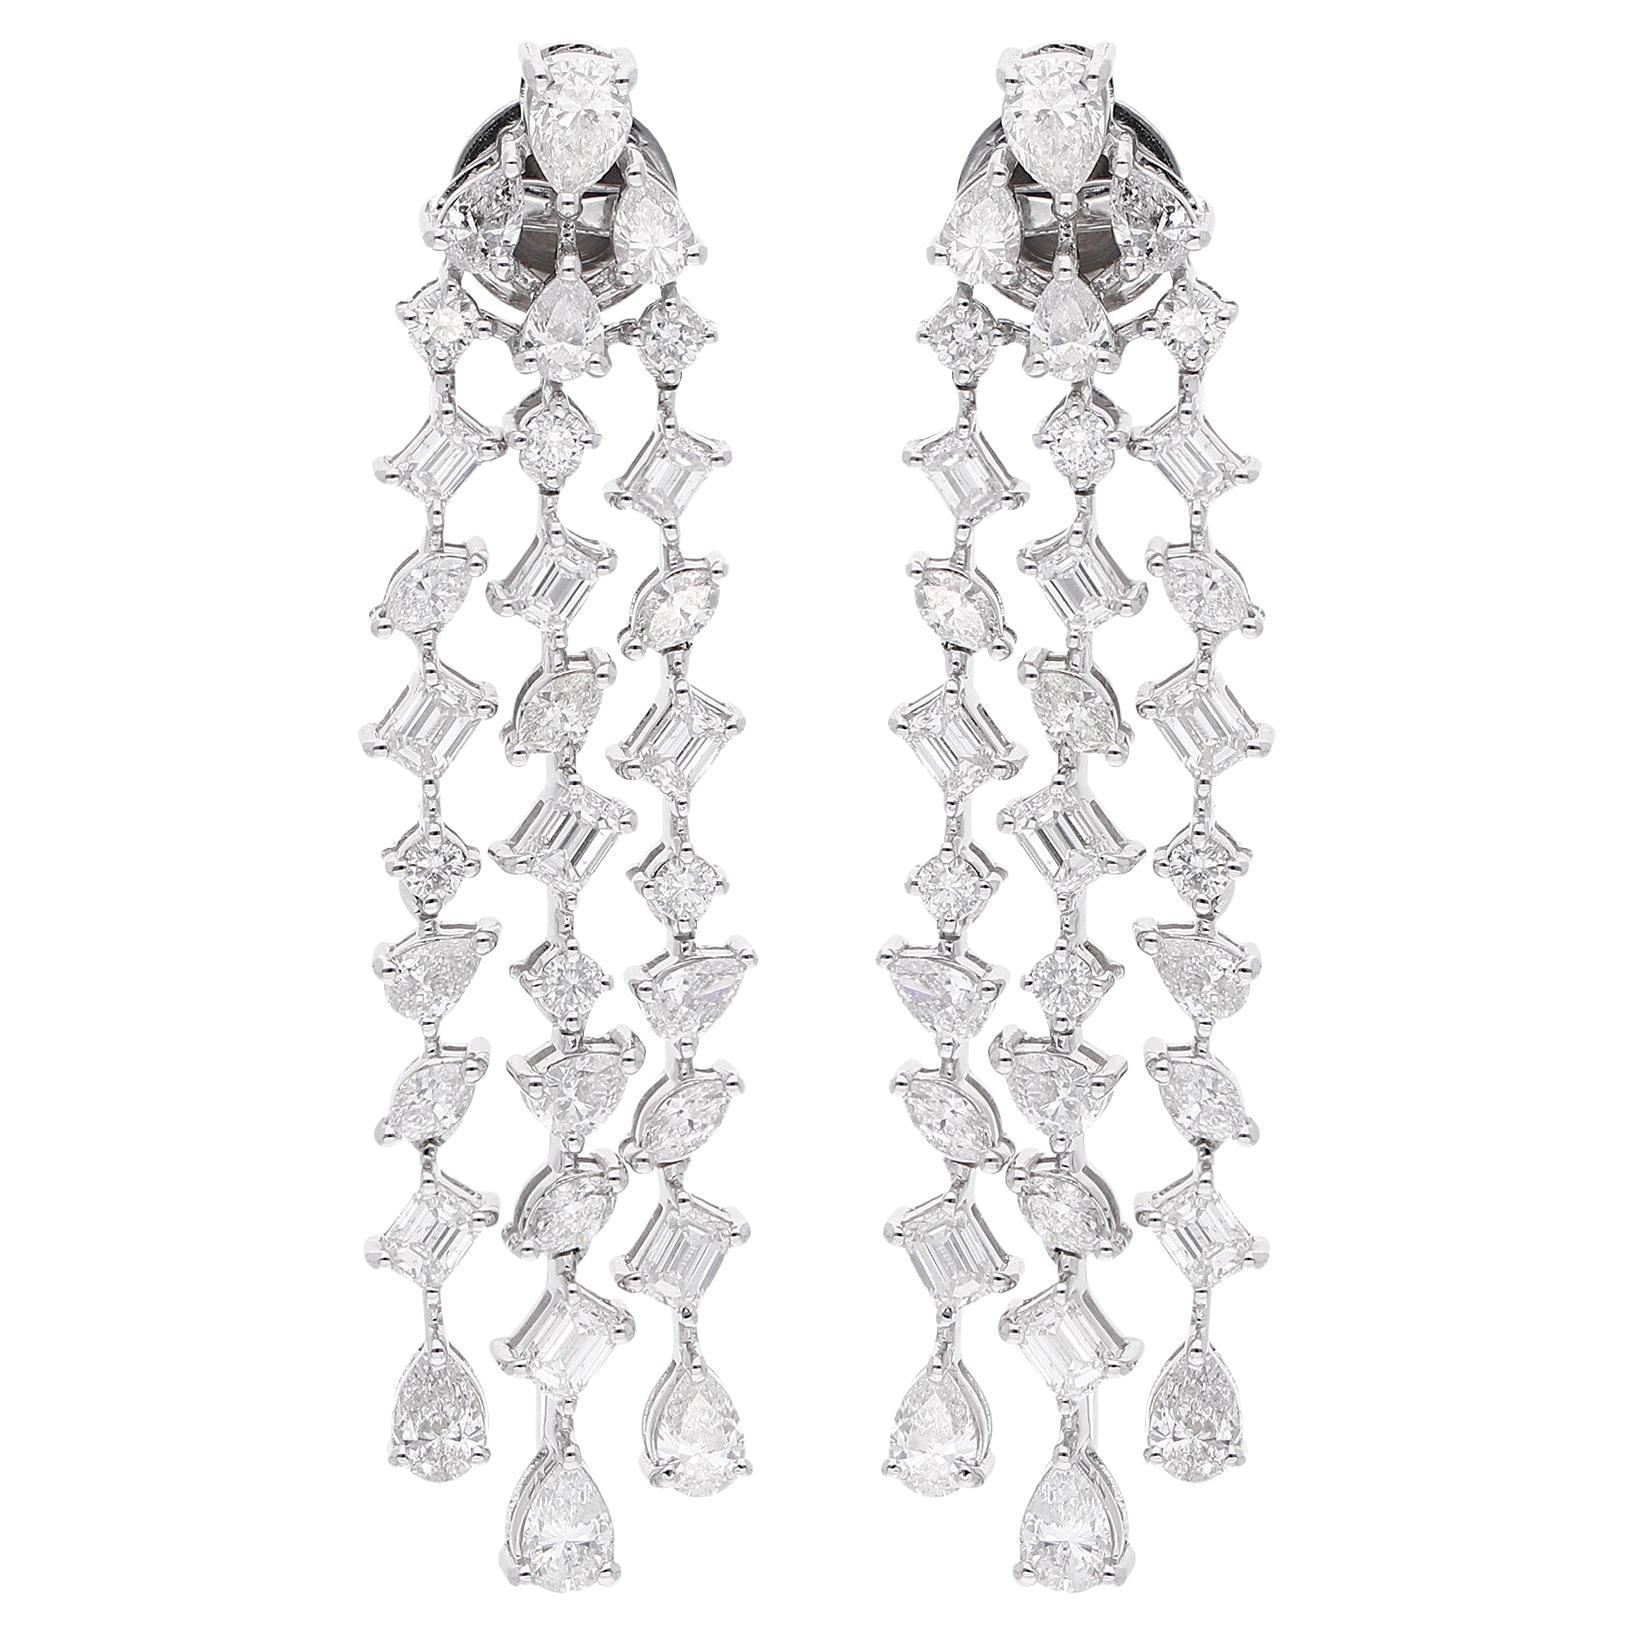 Marquise Pear Emerald Cut Diamond Fine Chandelier Earrings 18 Karat White Gold